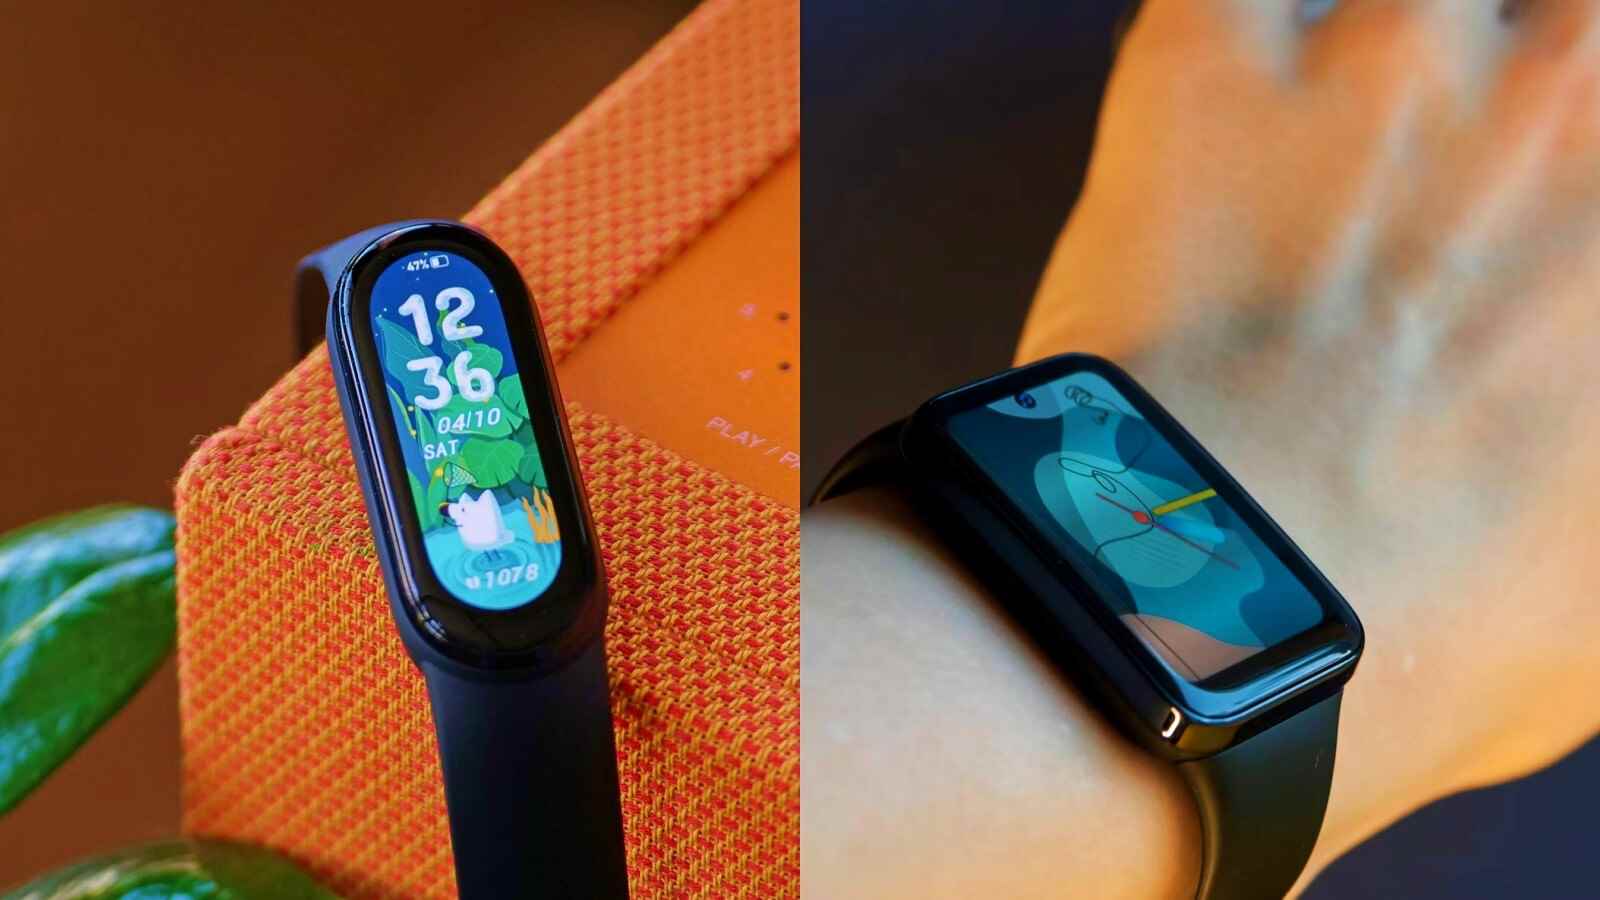 Xiaomi Mi Band 5 cihazım kondisyon takibi yapıyor, bana zamanı gösteriyor ve Pixel Watch fiyatının %10'una zamanlayıcılar kurmama izin veriyor.  Oh, ve tek bir şarjla 2 hafta sürer.  - 30$'lık bir spor takipçisi ile değiştirilebilen bir saat için 300$ ödemek: 6 ay sonra Pixel Watch